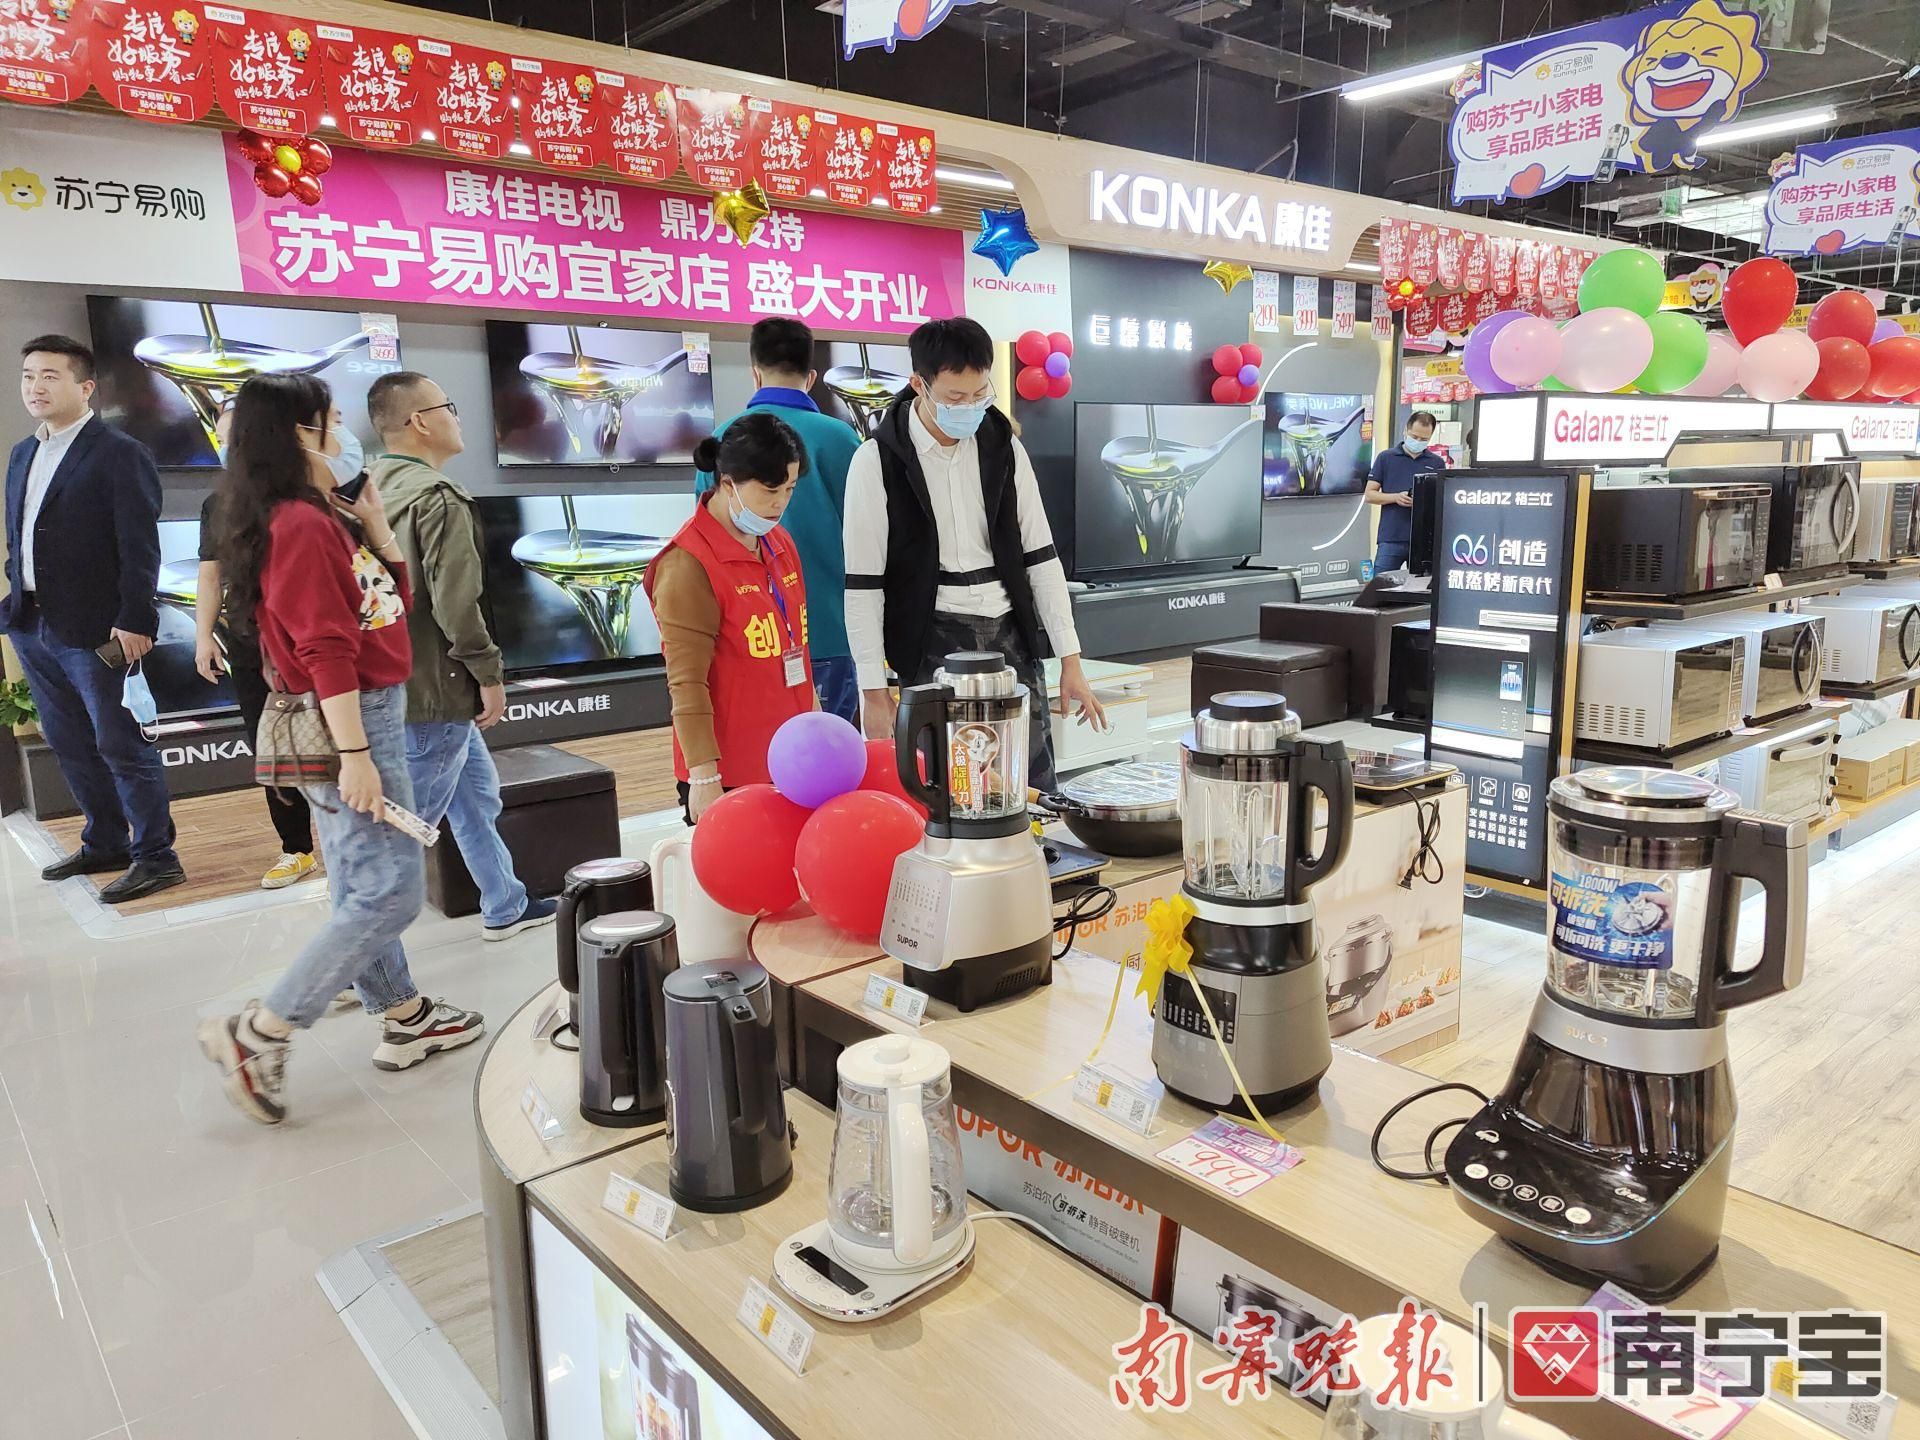 苏宁易购南宁宜家店开业五象新区有了第一家大型综合家电卖场